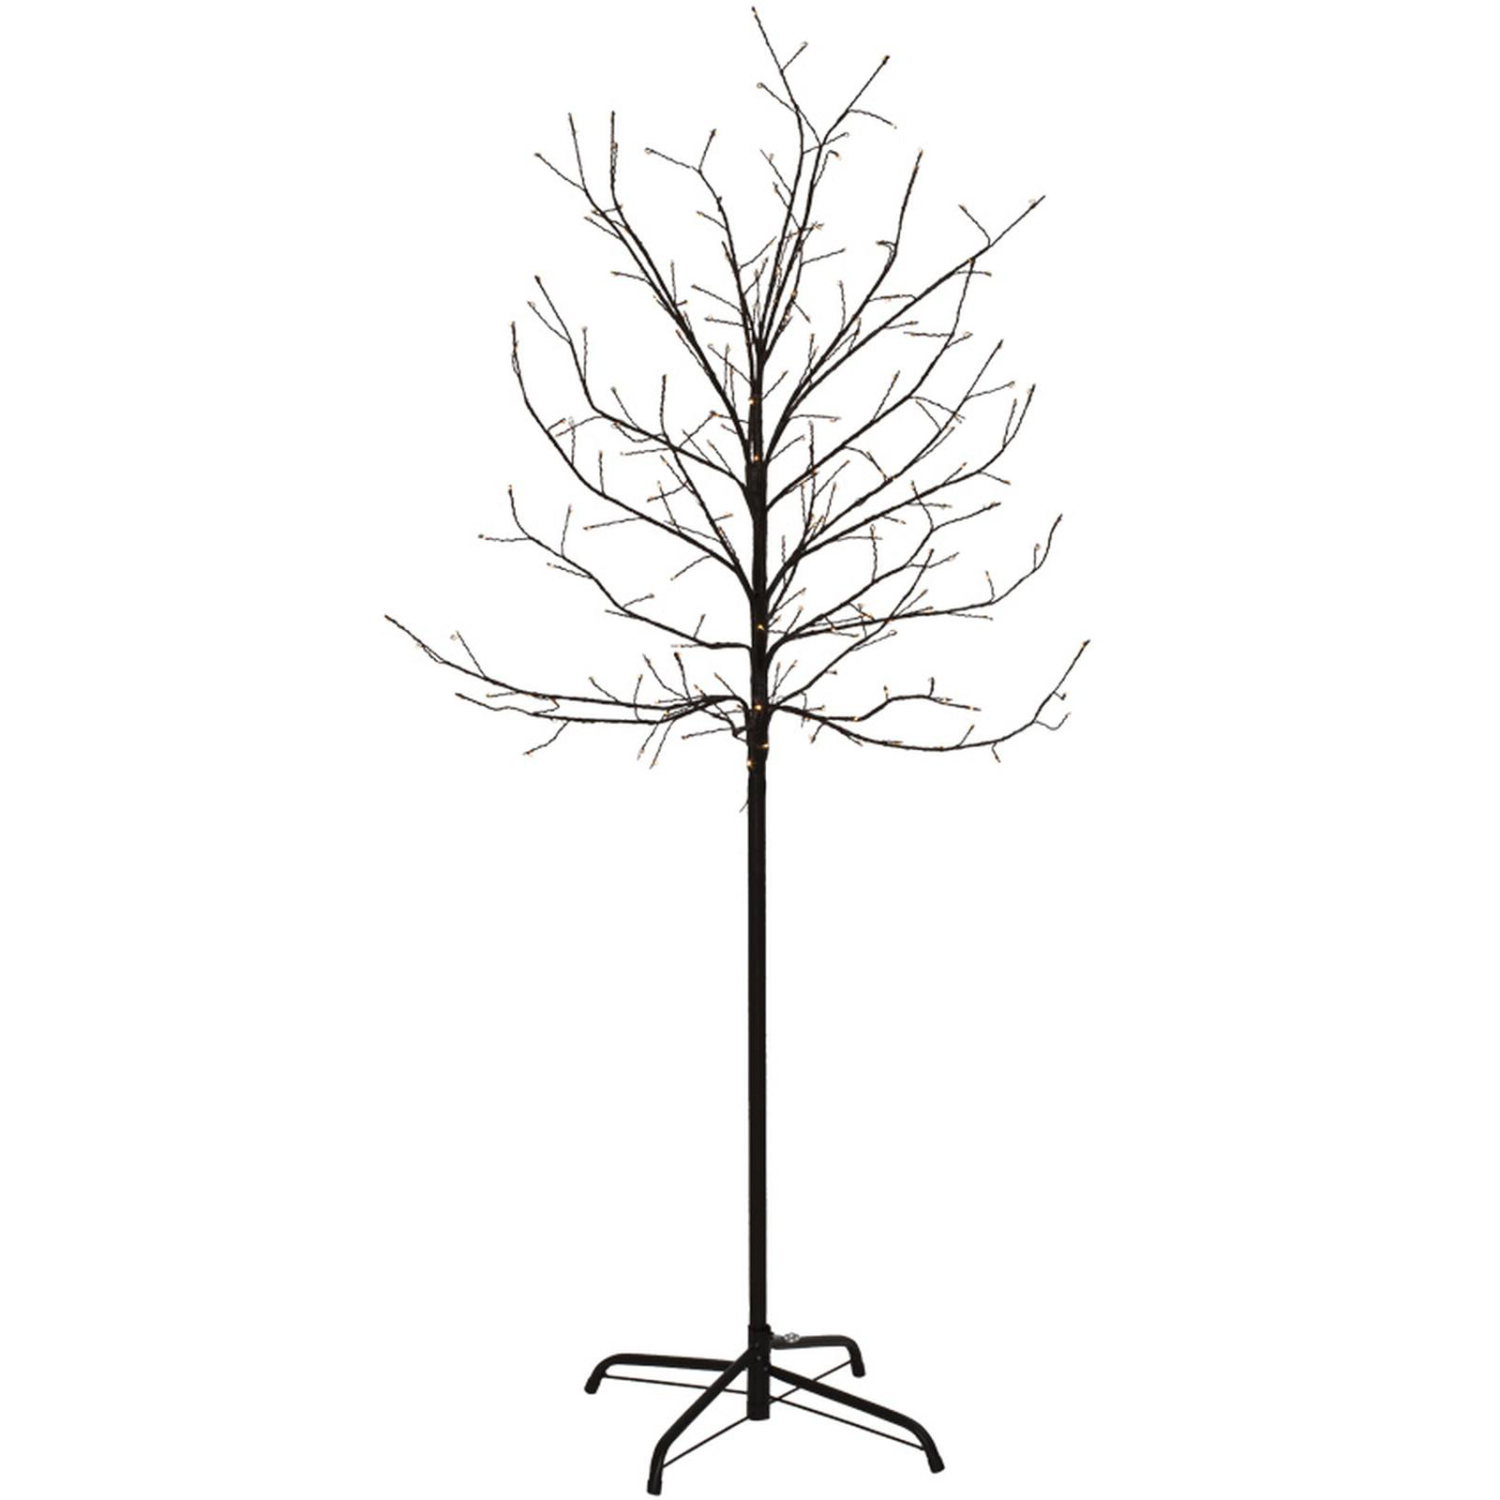 Lichterbaum 200 LED warmweiß 150 cm - Silhouette beleuchteter Bau, 32,99 €